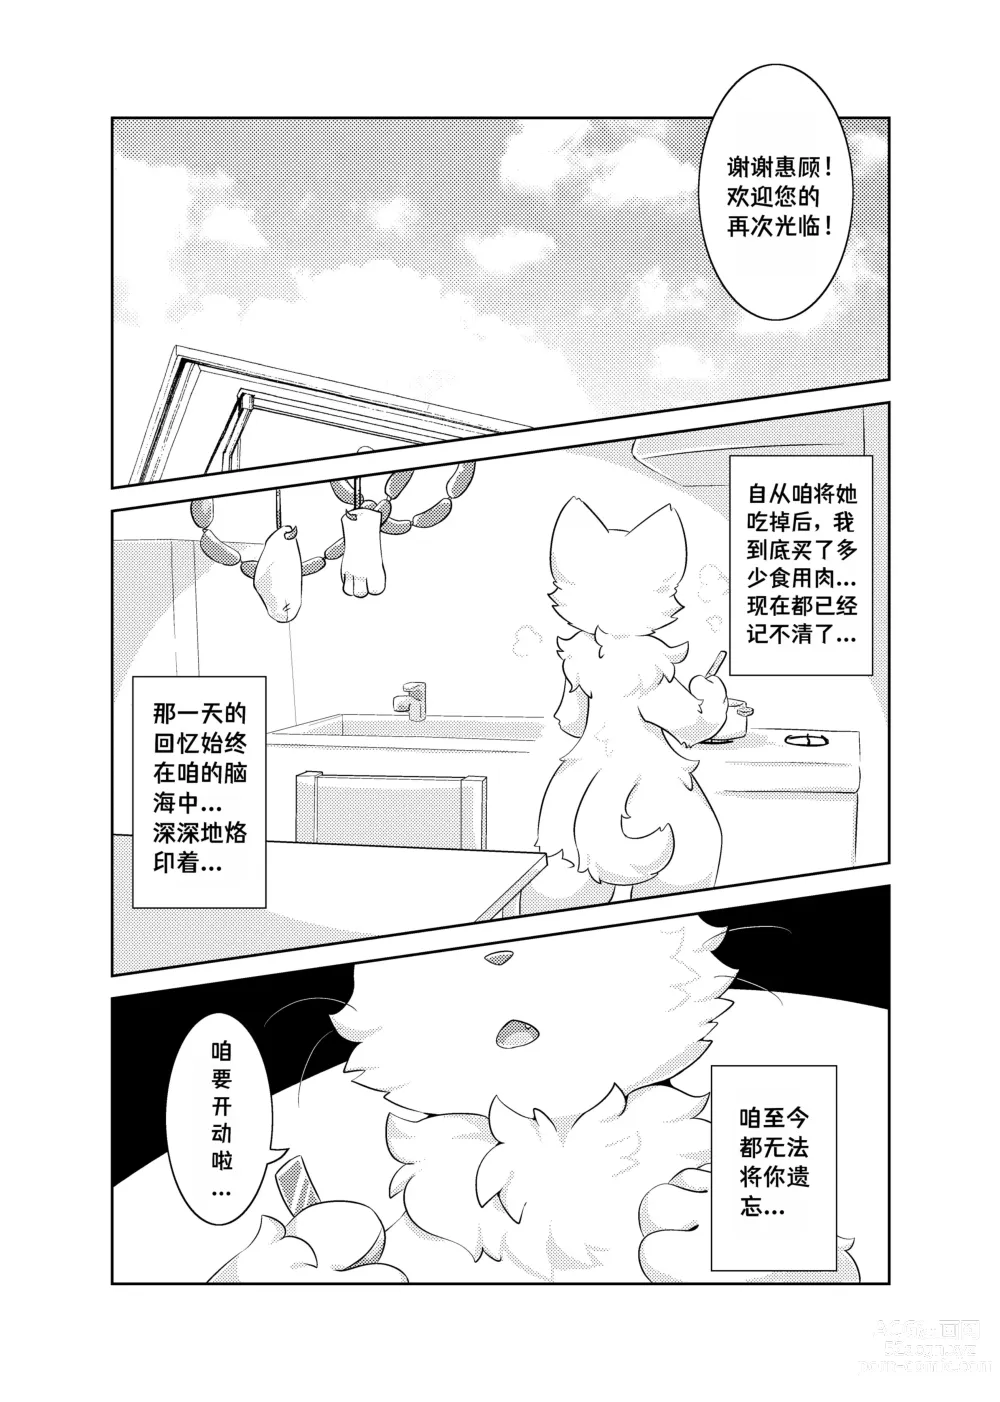 Page 46 of doujinshi Bokuyo motsuni no oishii seikatu.R-18G